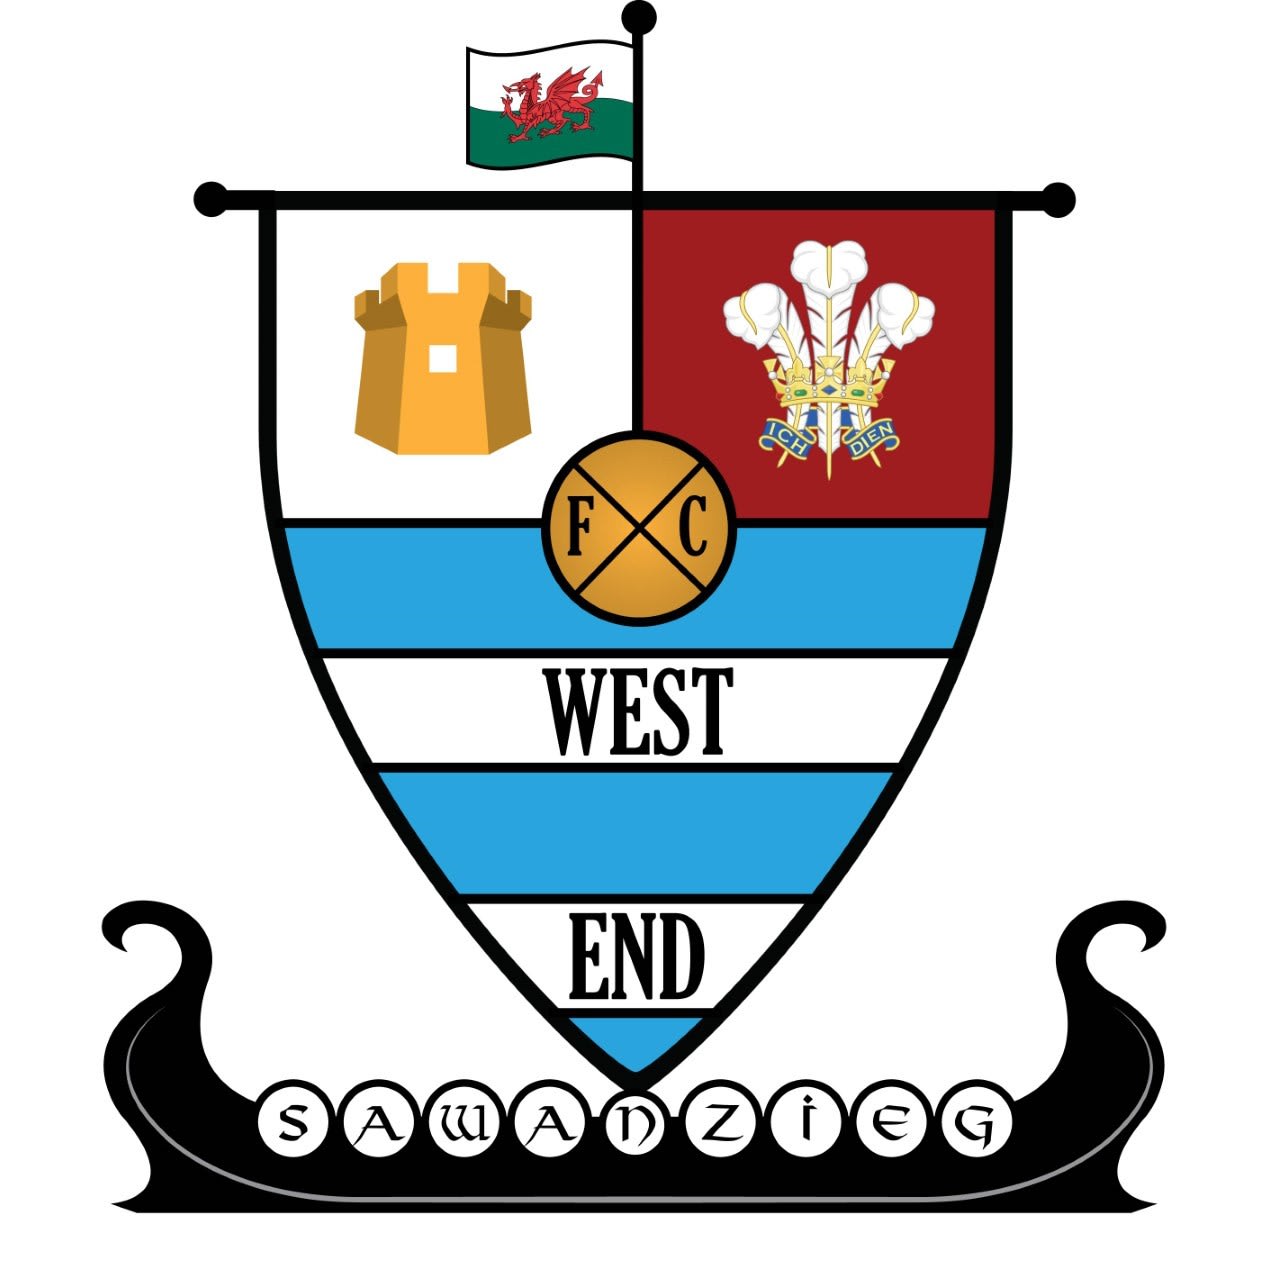 West End Football Club